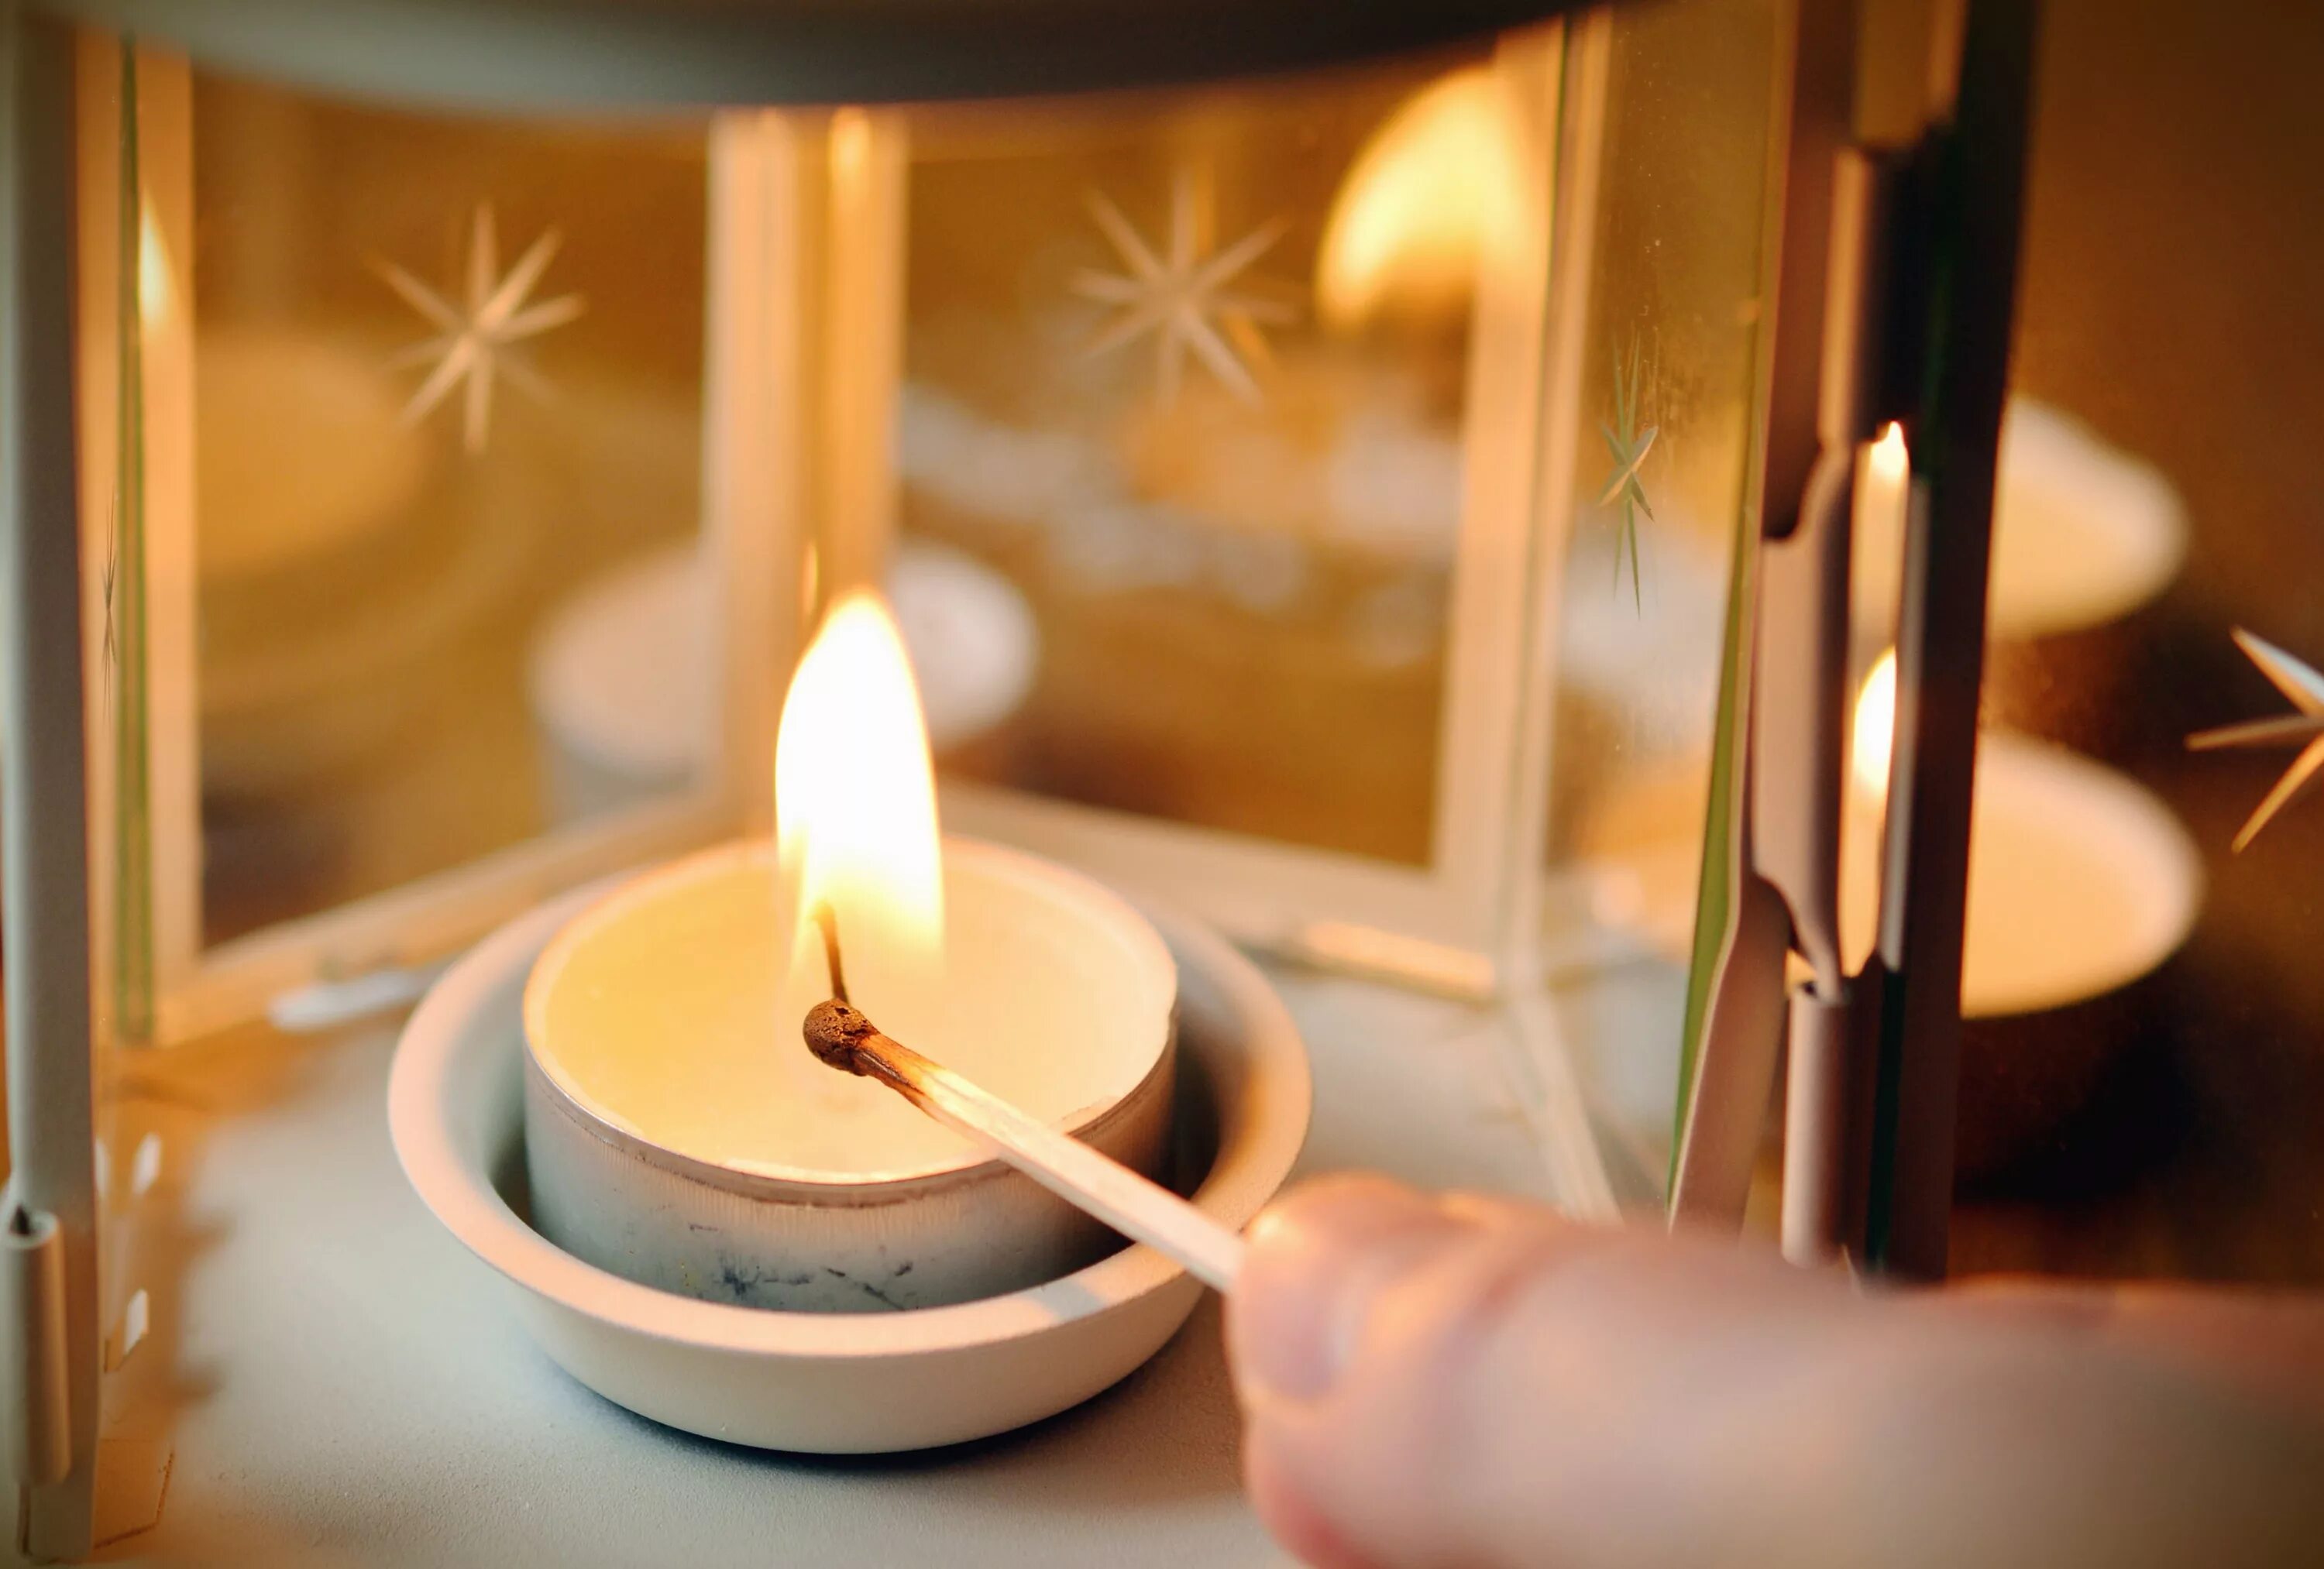 Действие свечей. Свечи на снегу. Зажженная чайная свеча. Зажженные уютные свечи. Свеча от свечи зажигается.